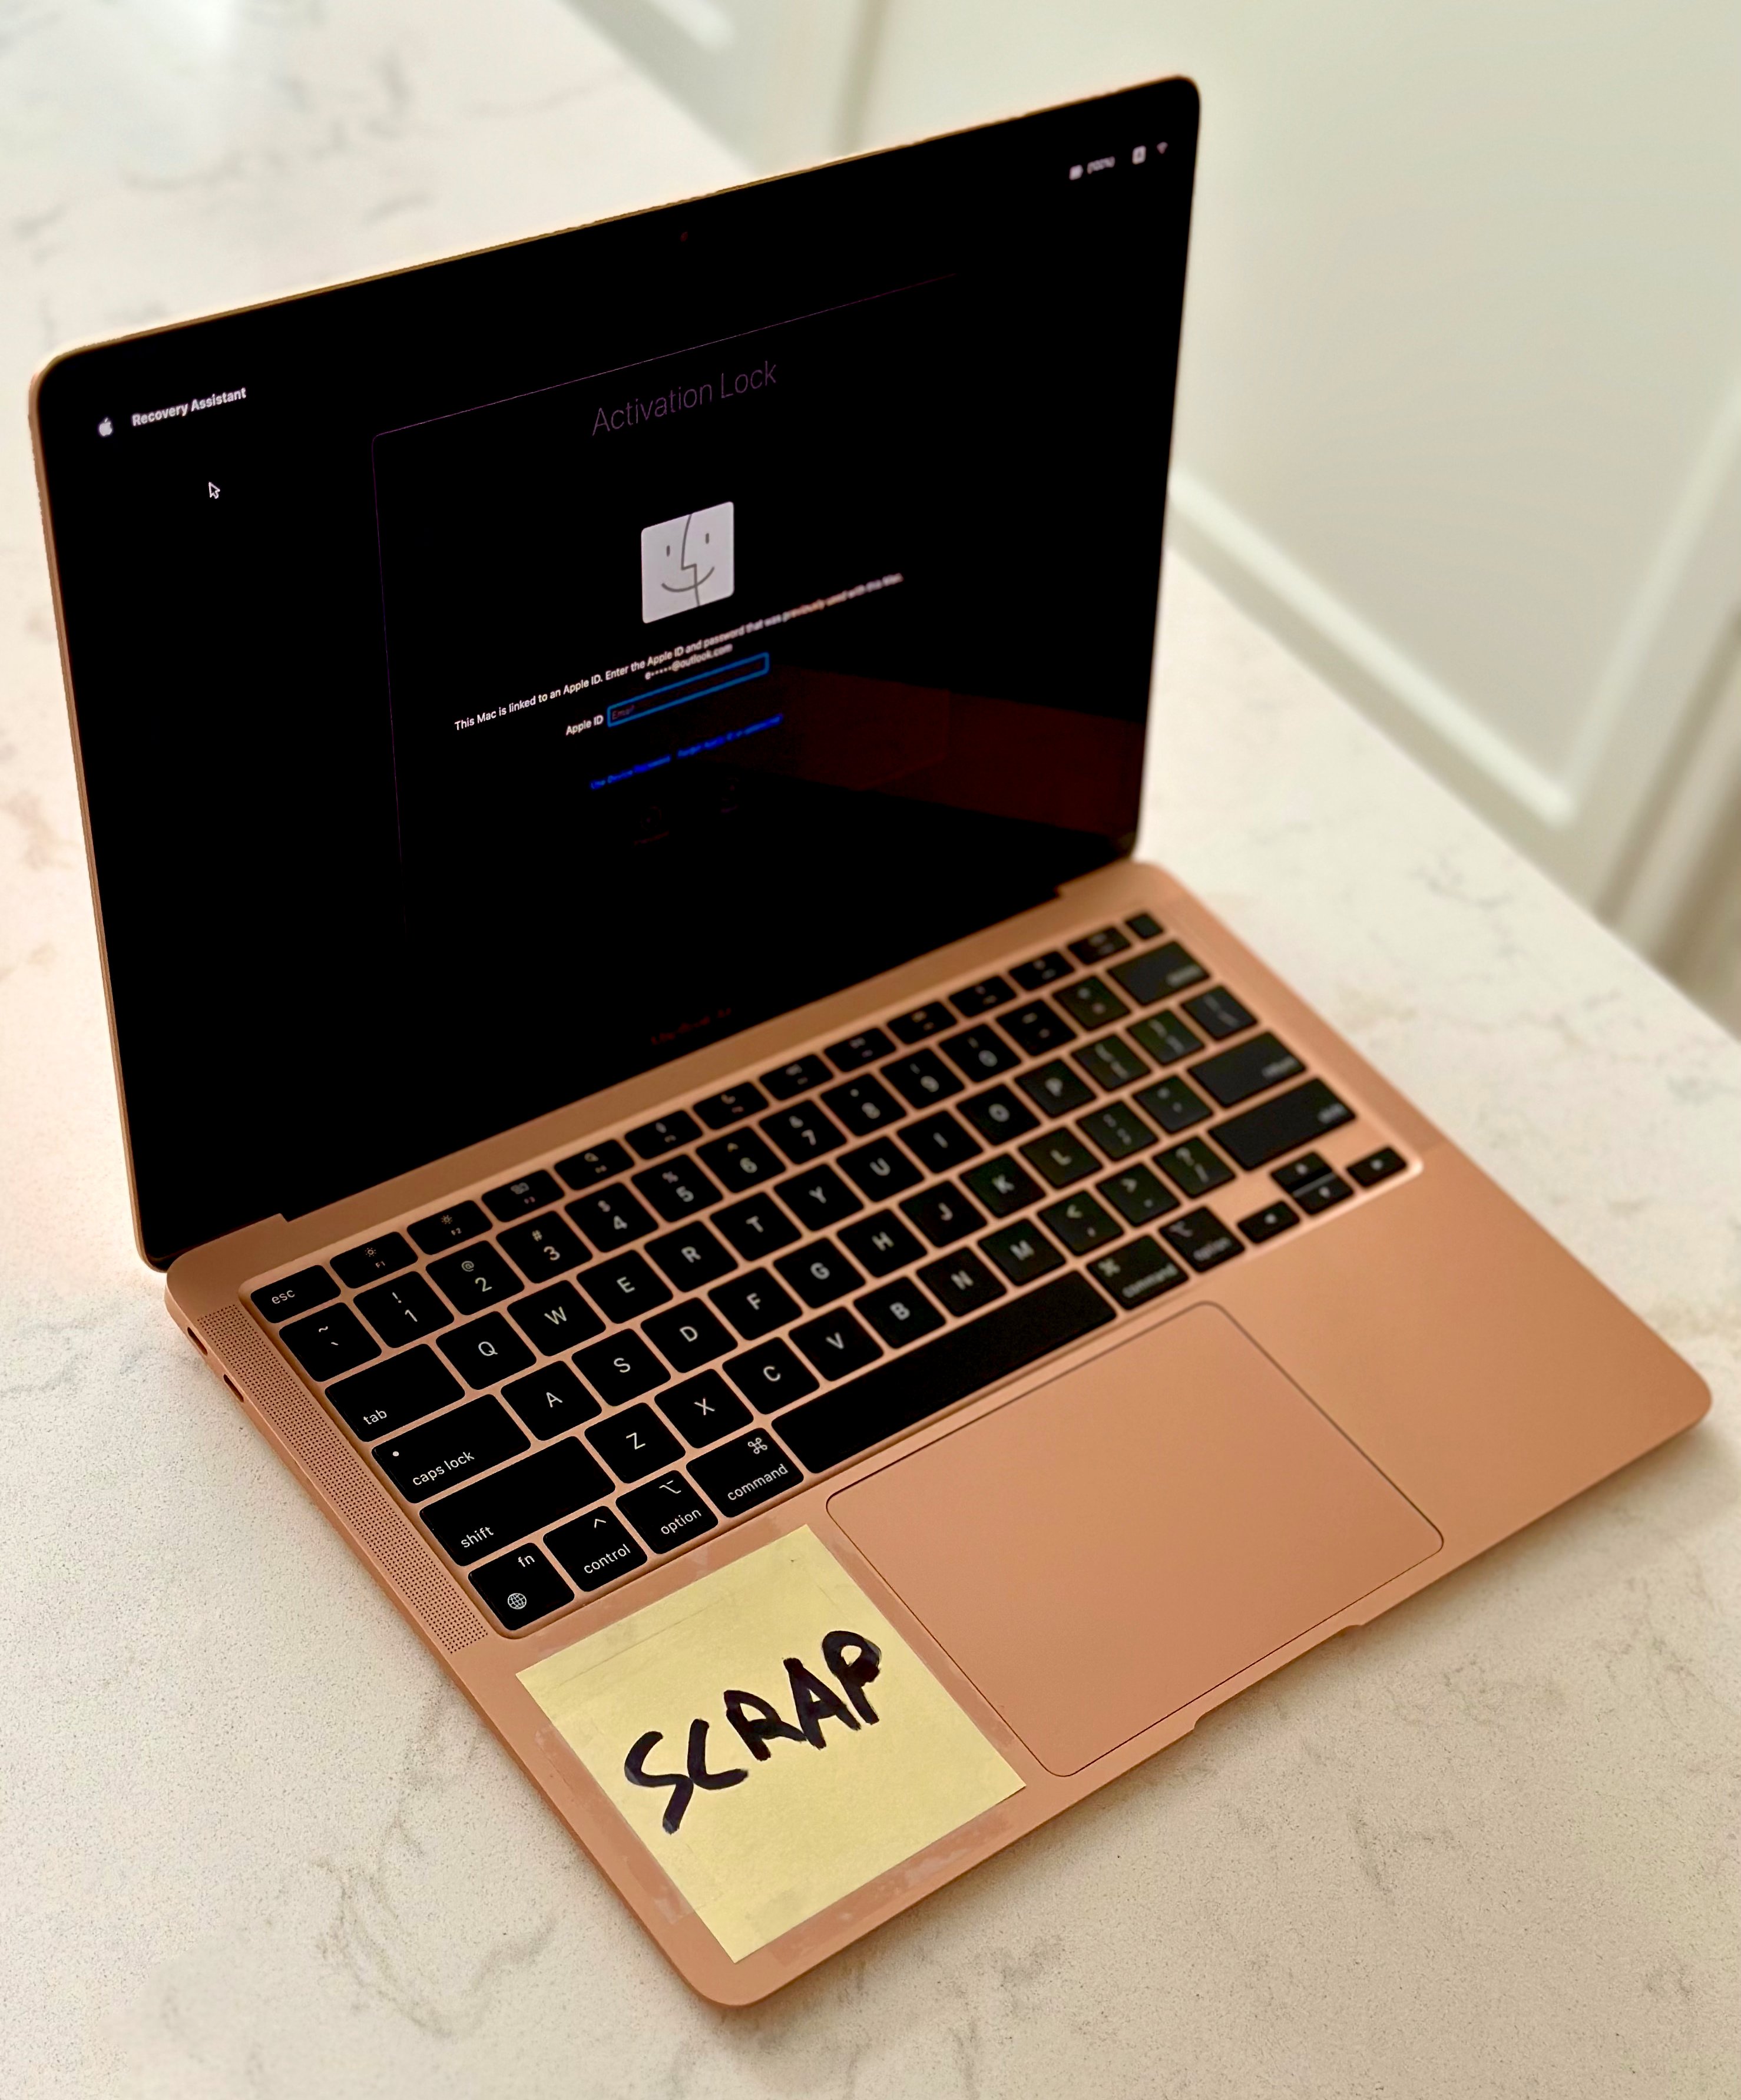 Apple MacBook сдают в металлолом из-за блокировки активации